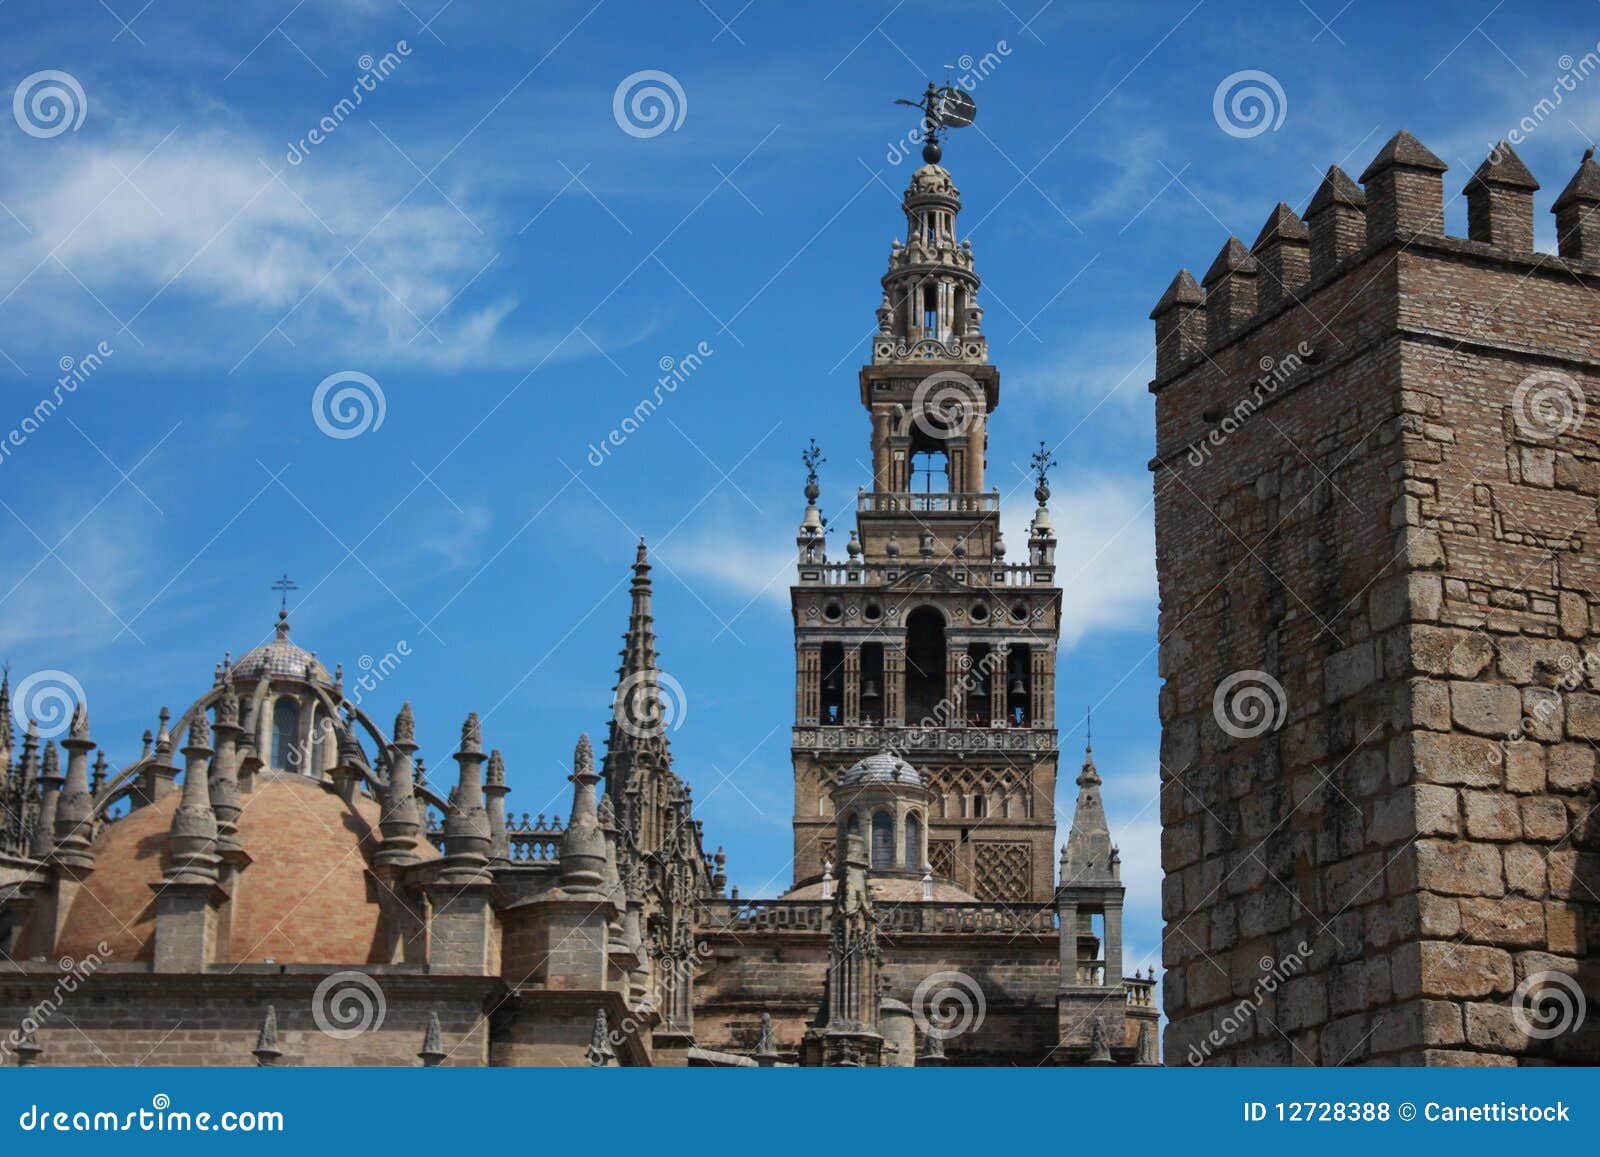 landmarks of seville